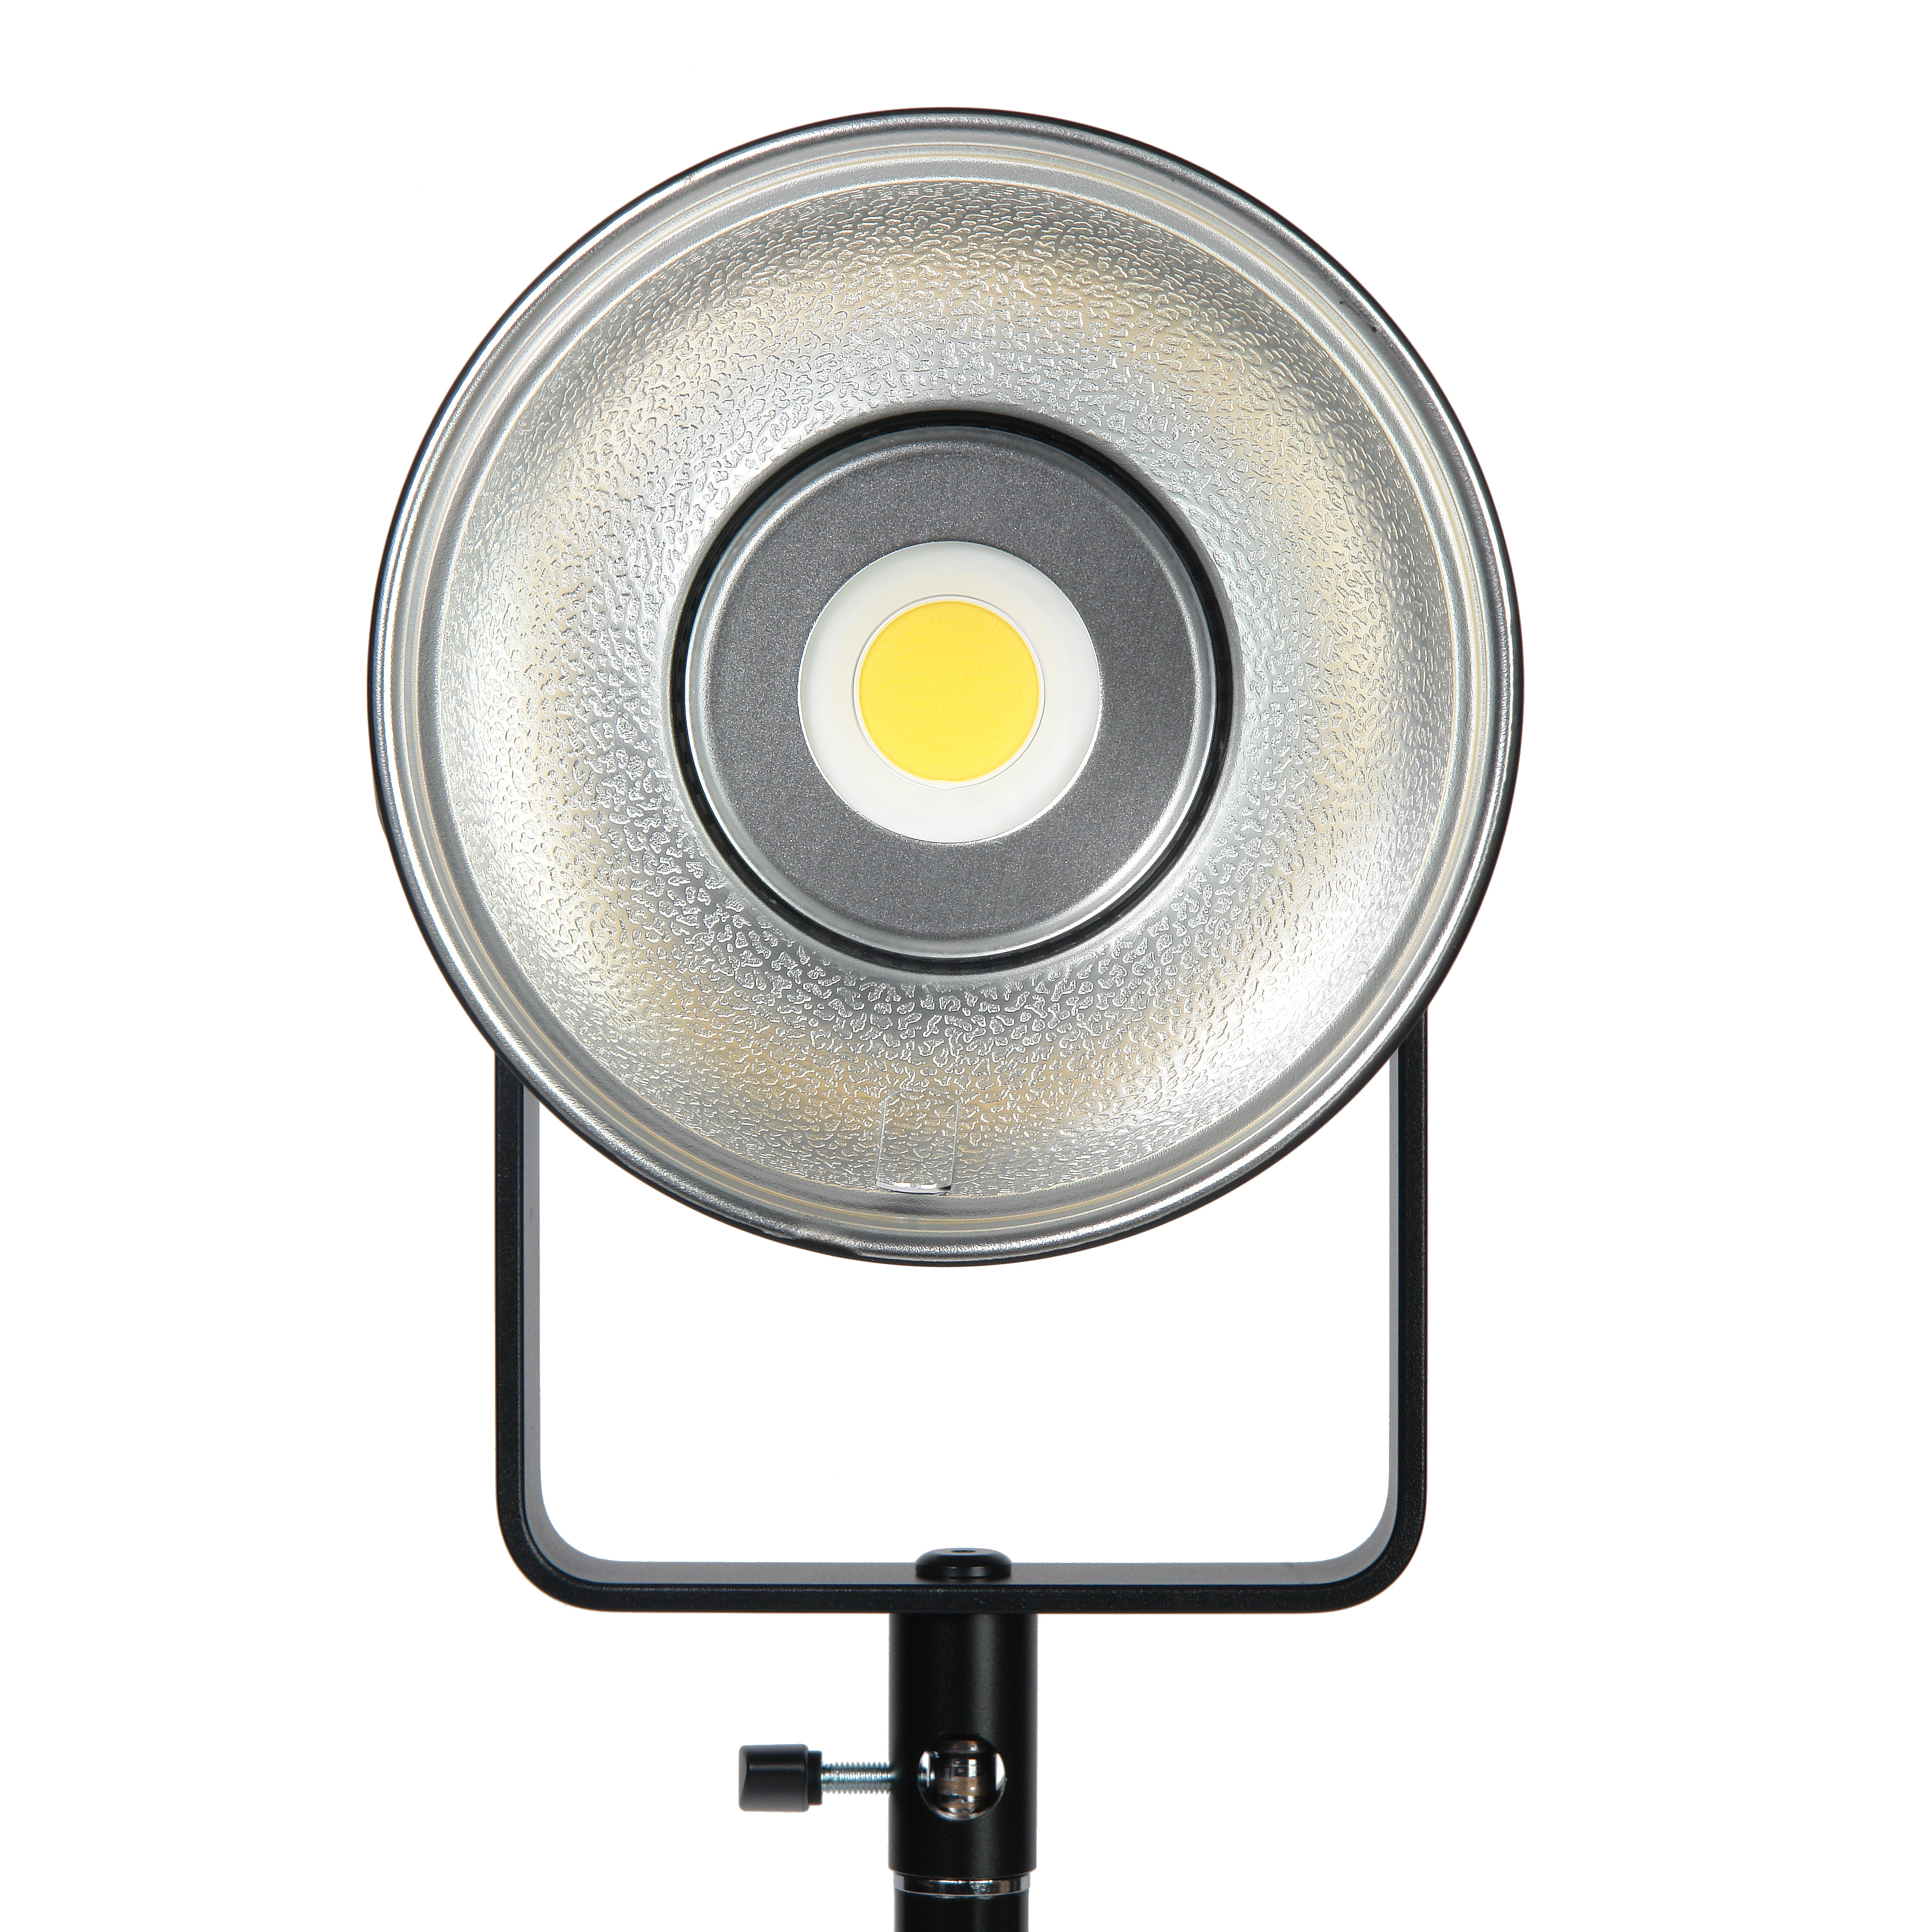 картинка Осветитель светодиодный Godox FV150 с функцией вспышки из Светодиодные LED осветители от магазина Mif-Bond